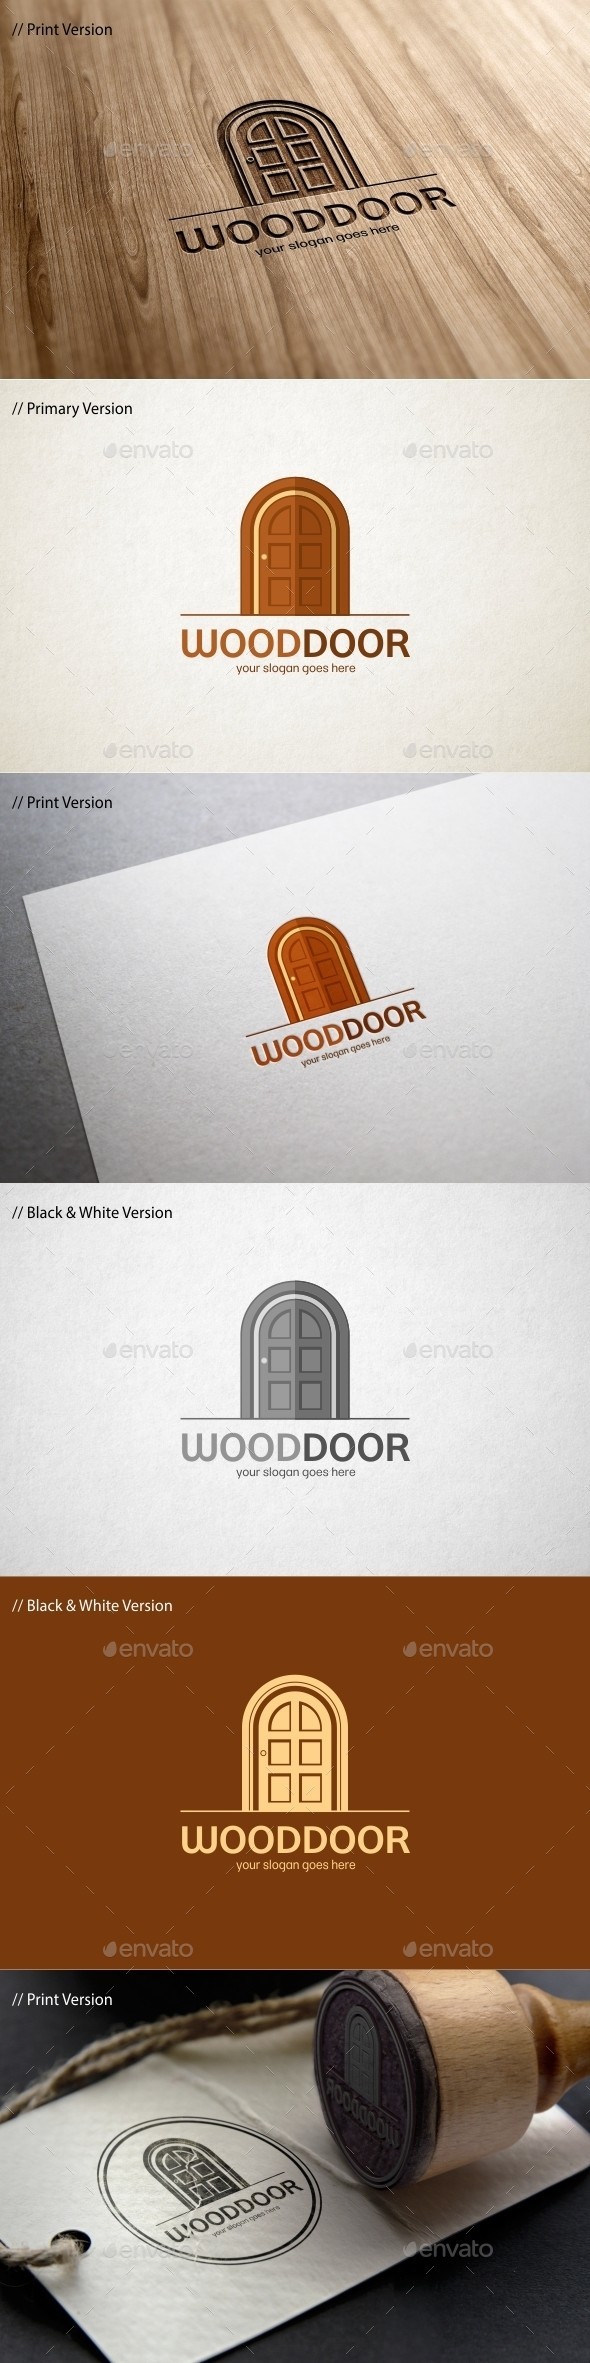 Wood 20door 20logo 20template 20590